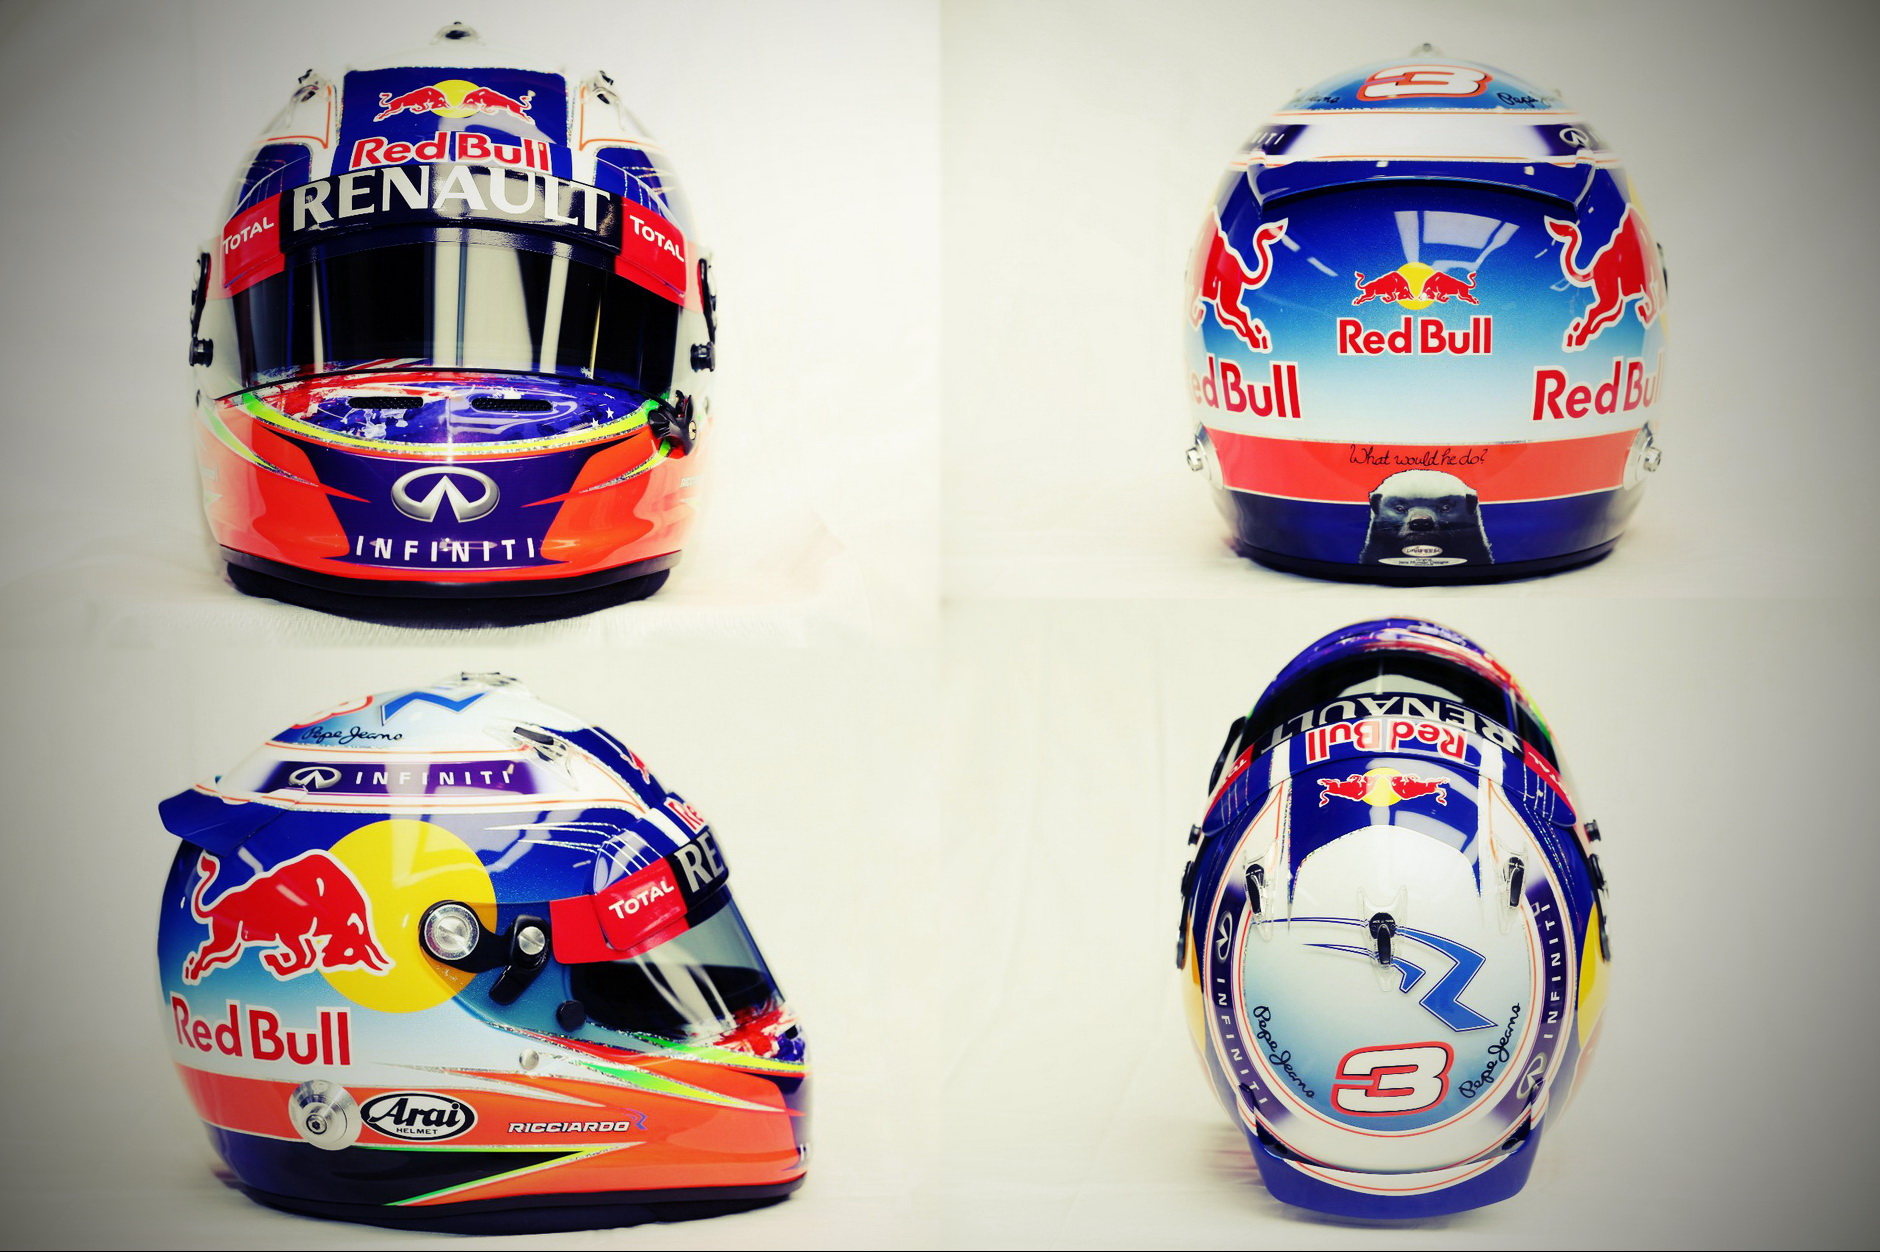 Шлем Даниэля Риккьярдо на сезон 2014 года | 2014 helmet of Daniel Ricciardo